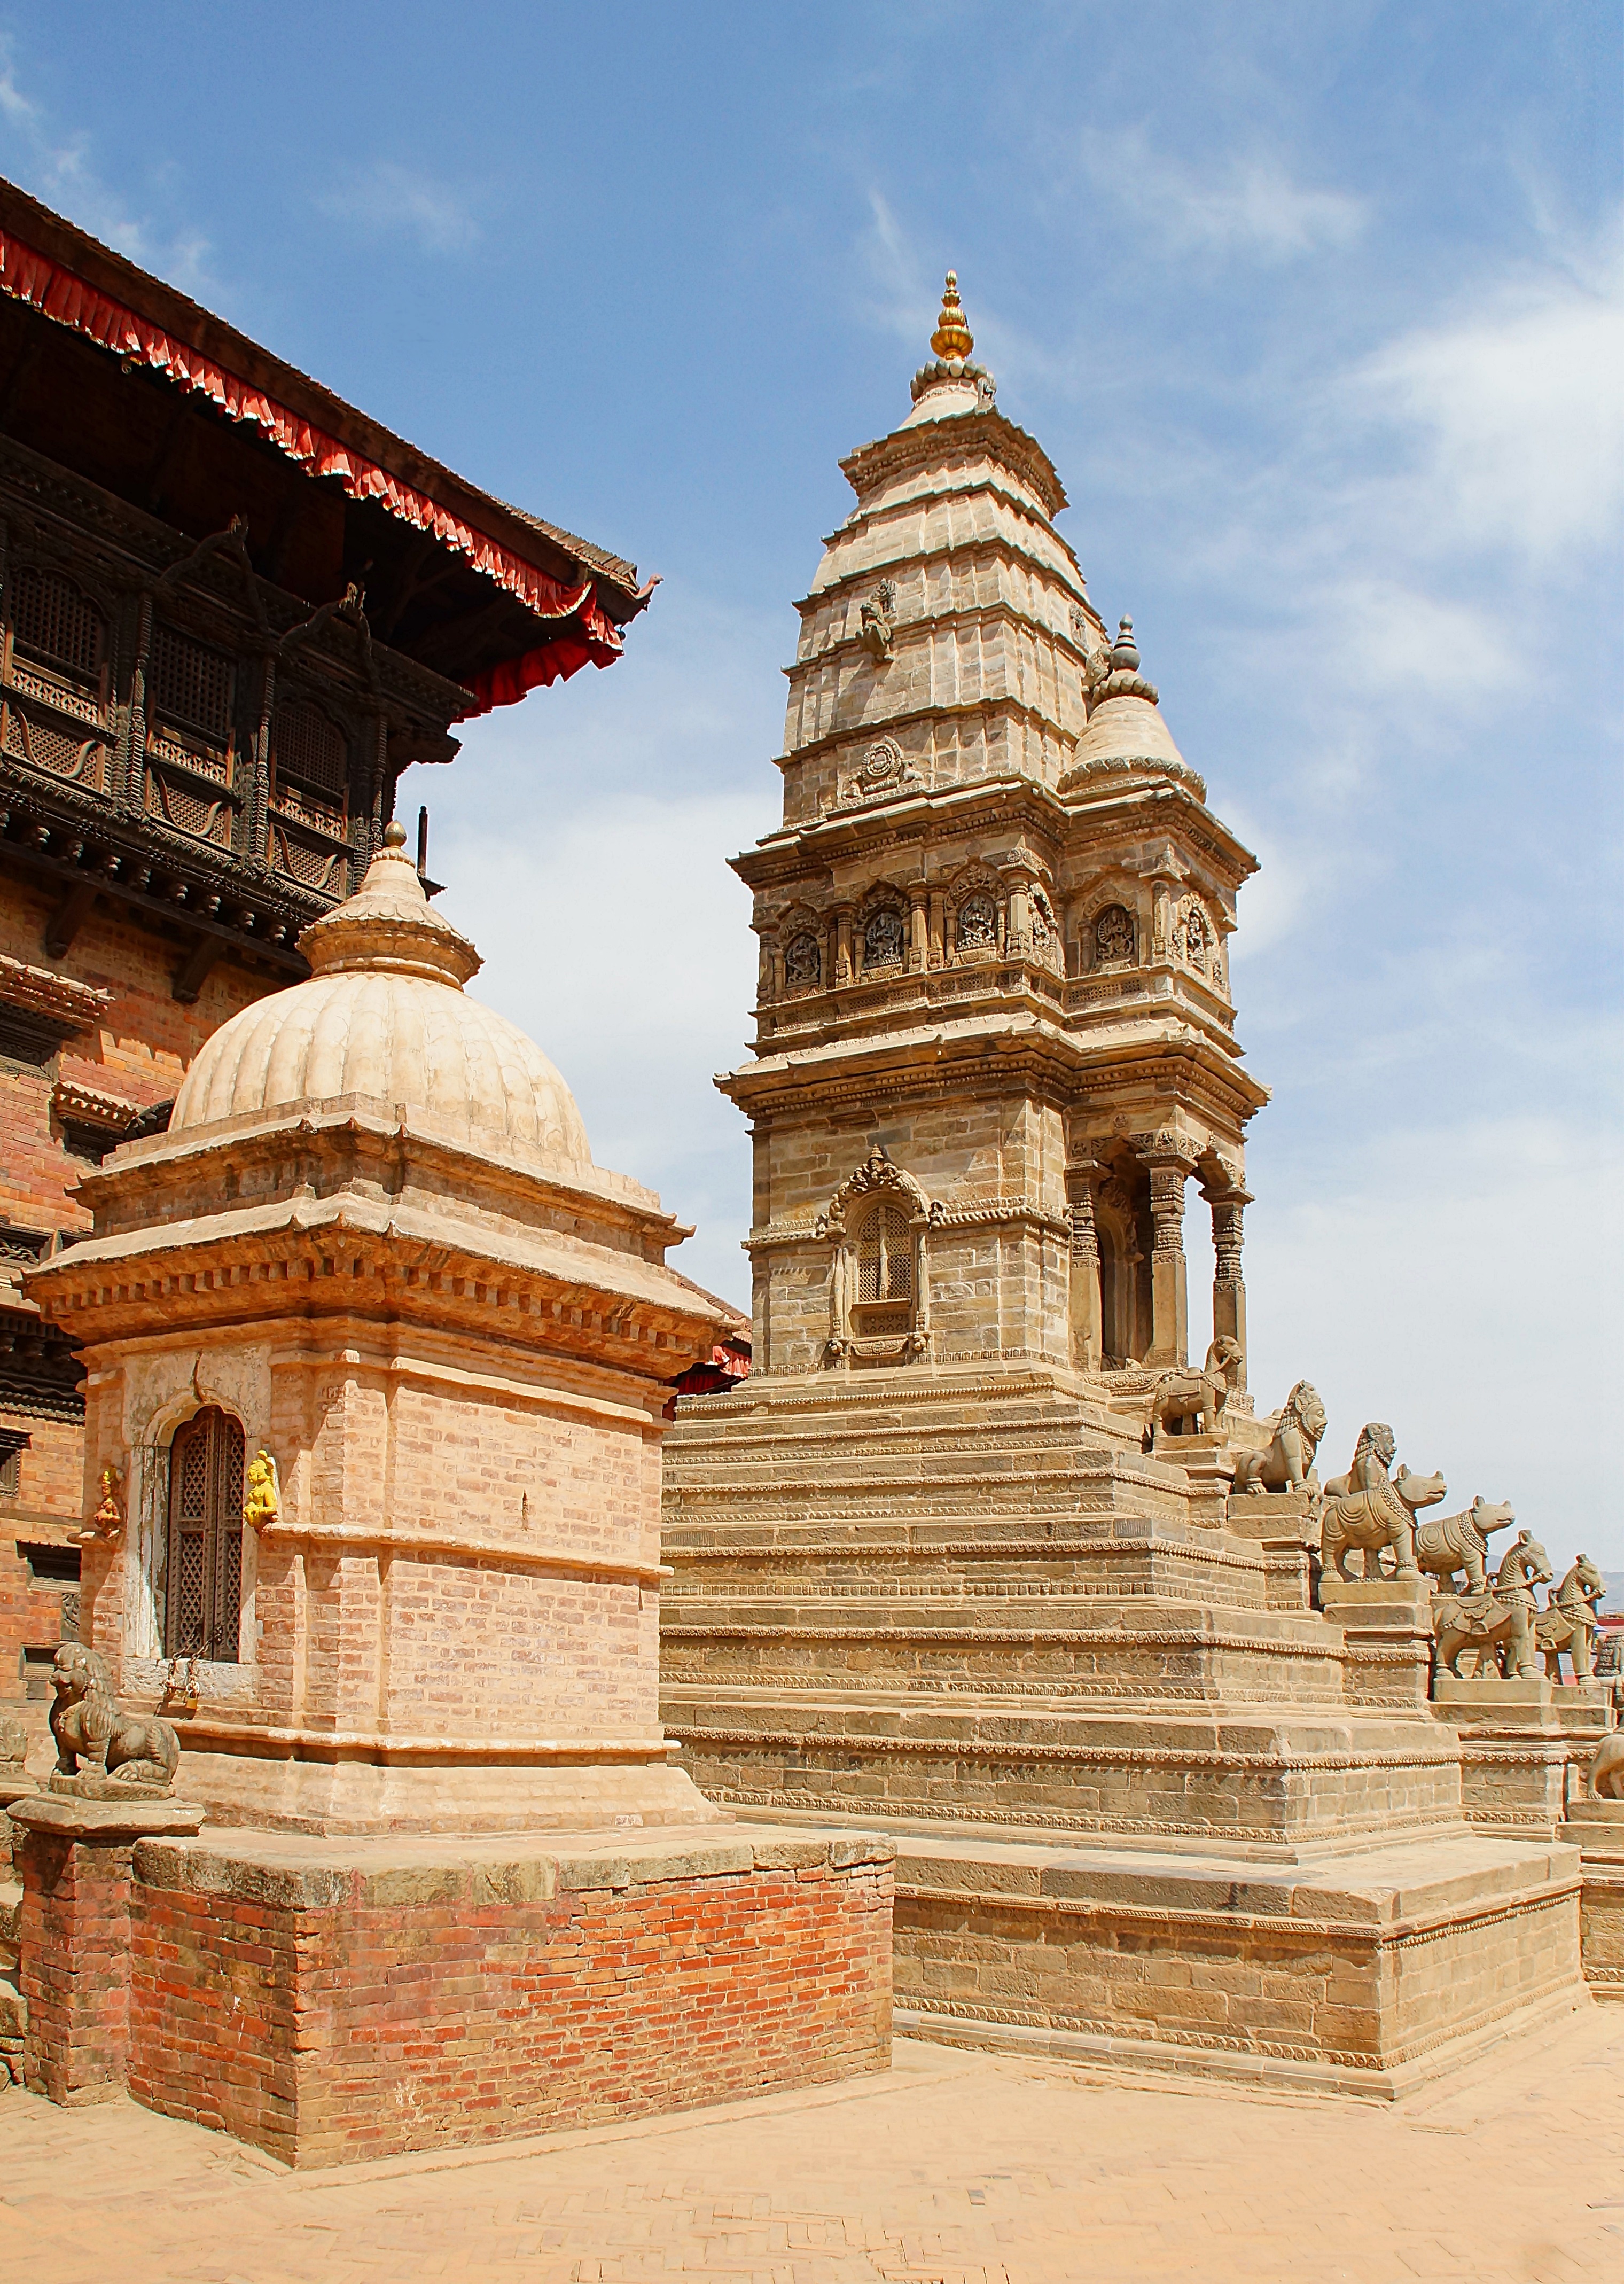 Храм в североиндуистском стиле на Ц. площади Бхактапура. Фото Морошкина В.В.